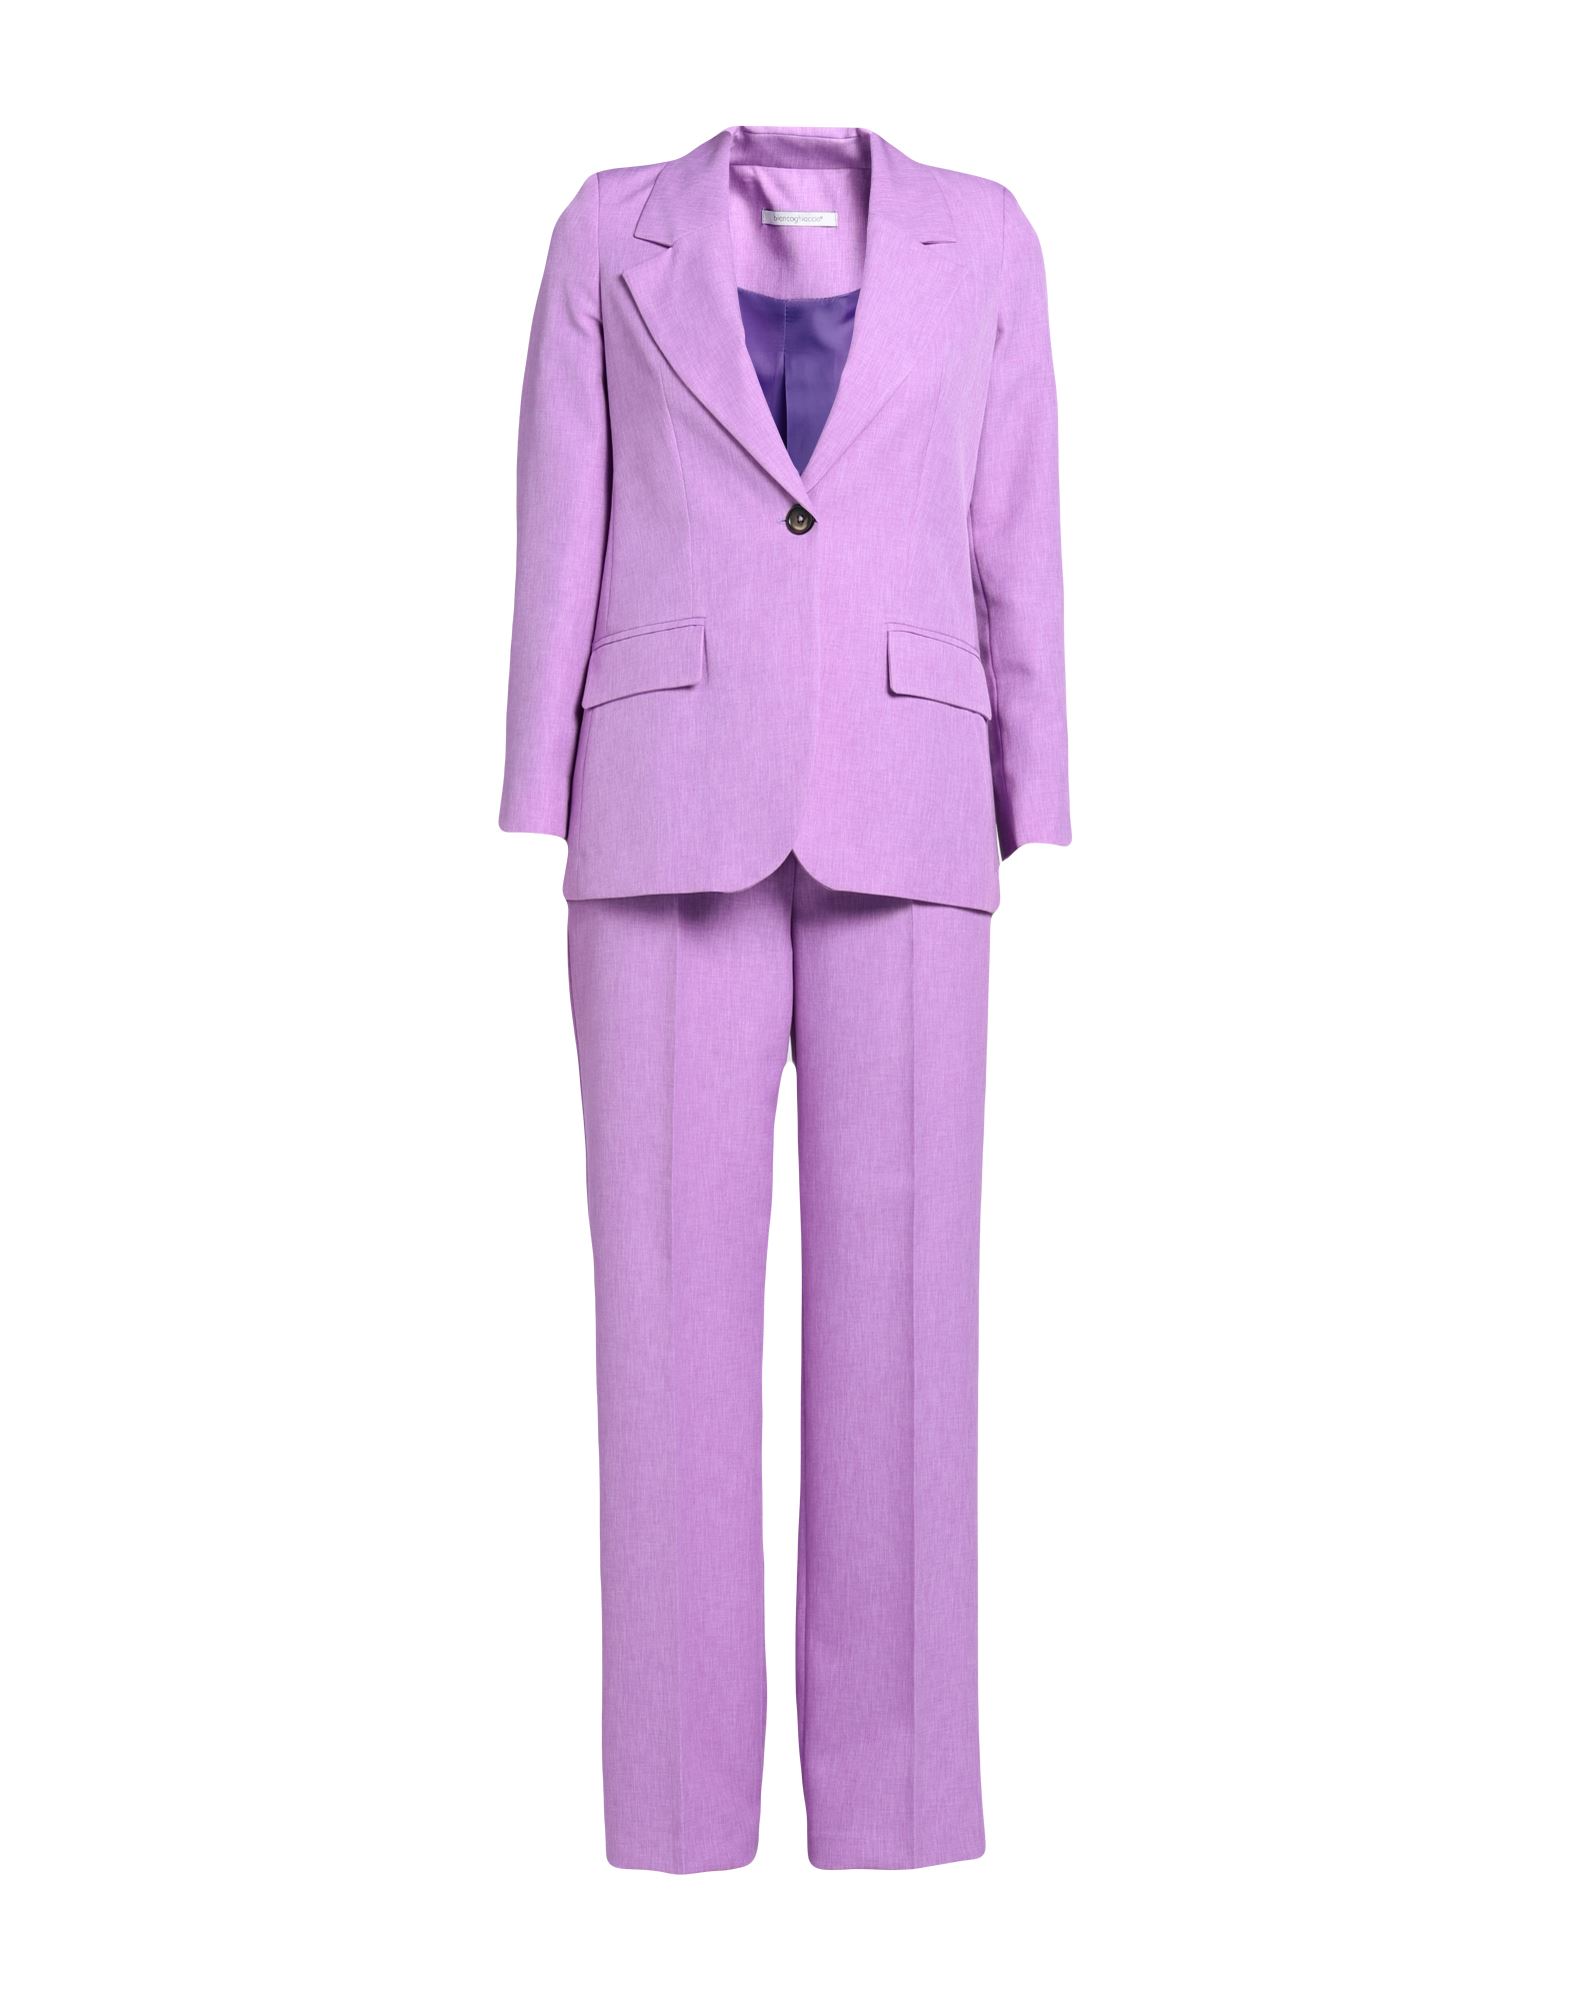 Biancoghiaccio Suits In Purple